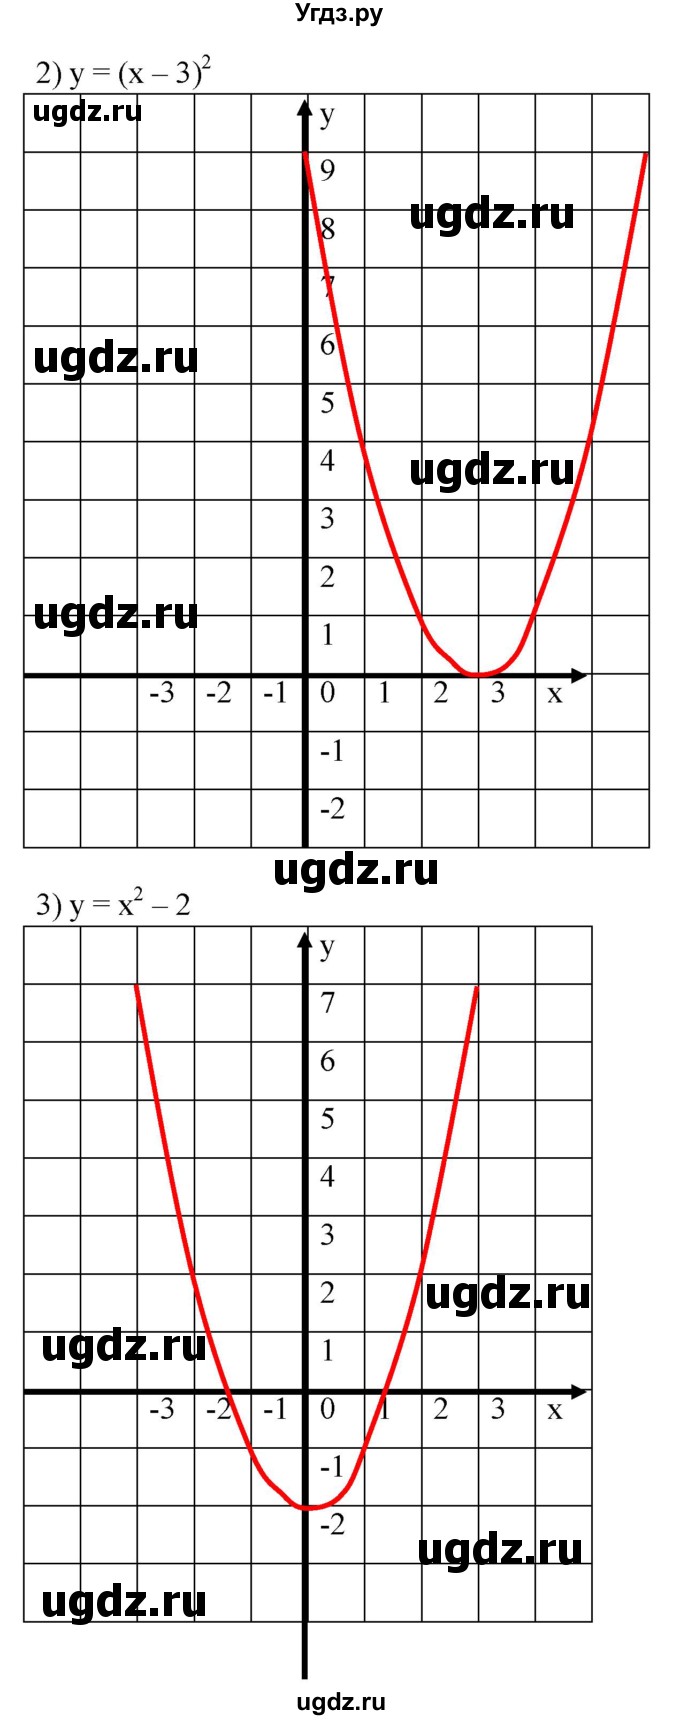 617. С помощью шаблона параболы у = х^2 построить график функции:
1) у = (х + 2)^2;	
2) у = (х- З)^2;
3) у = х^2-2;
4) у = -х^2 + 1;
5) у = -(х - 1)^2 - 3; 
6) у = (х + 2)^2 + 1.